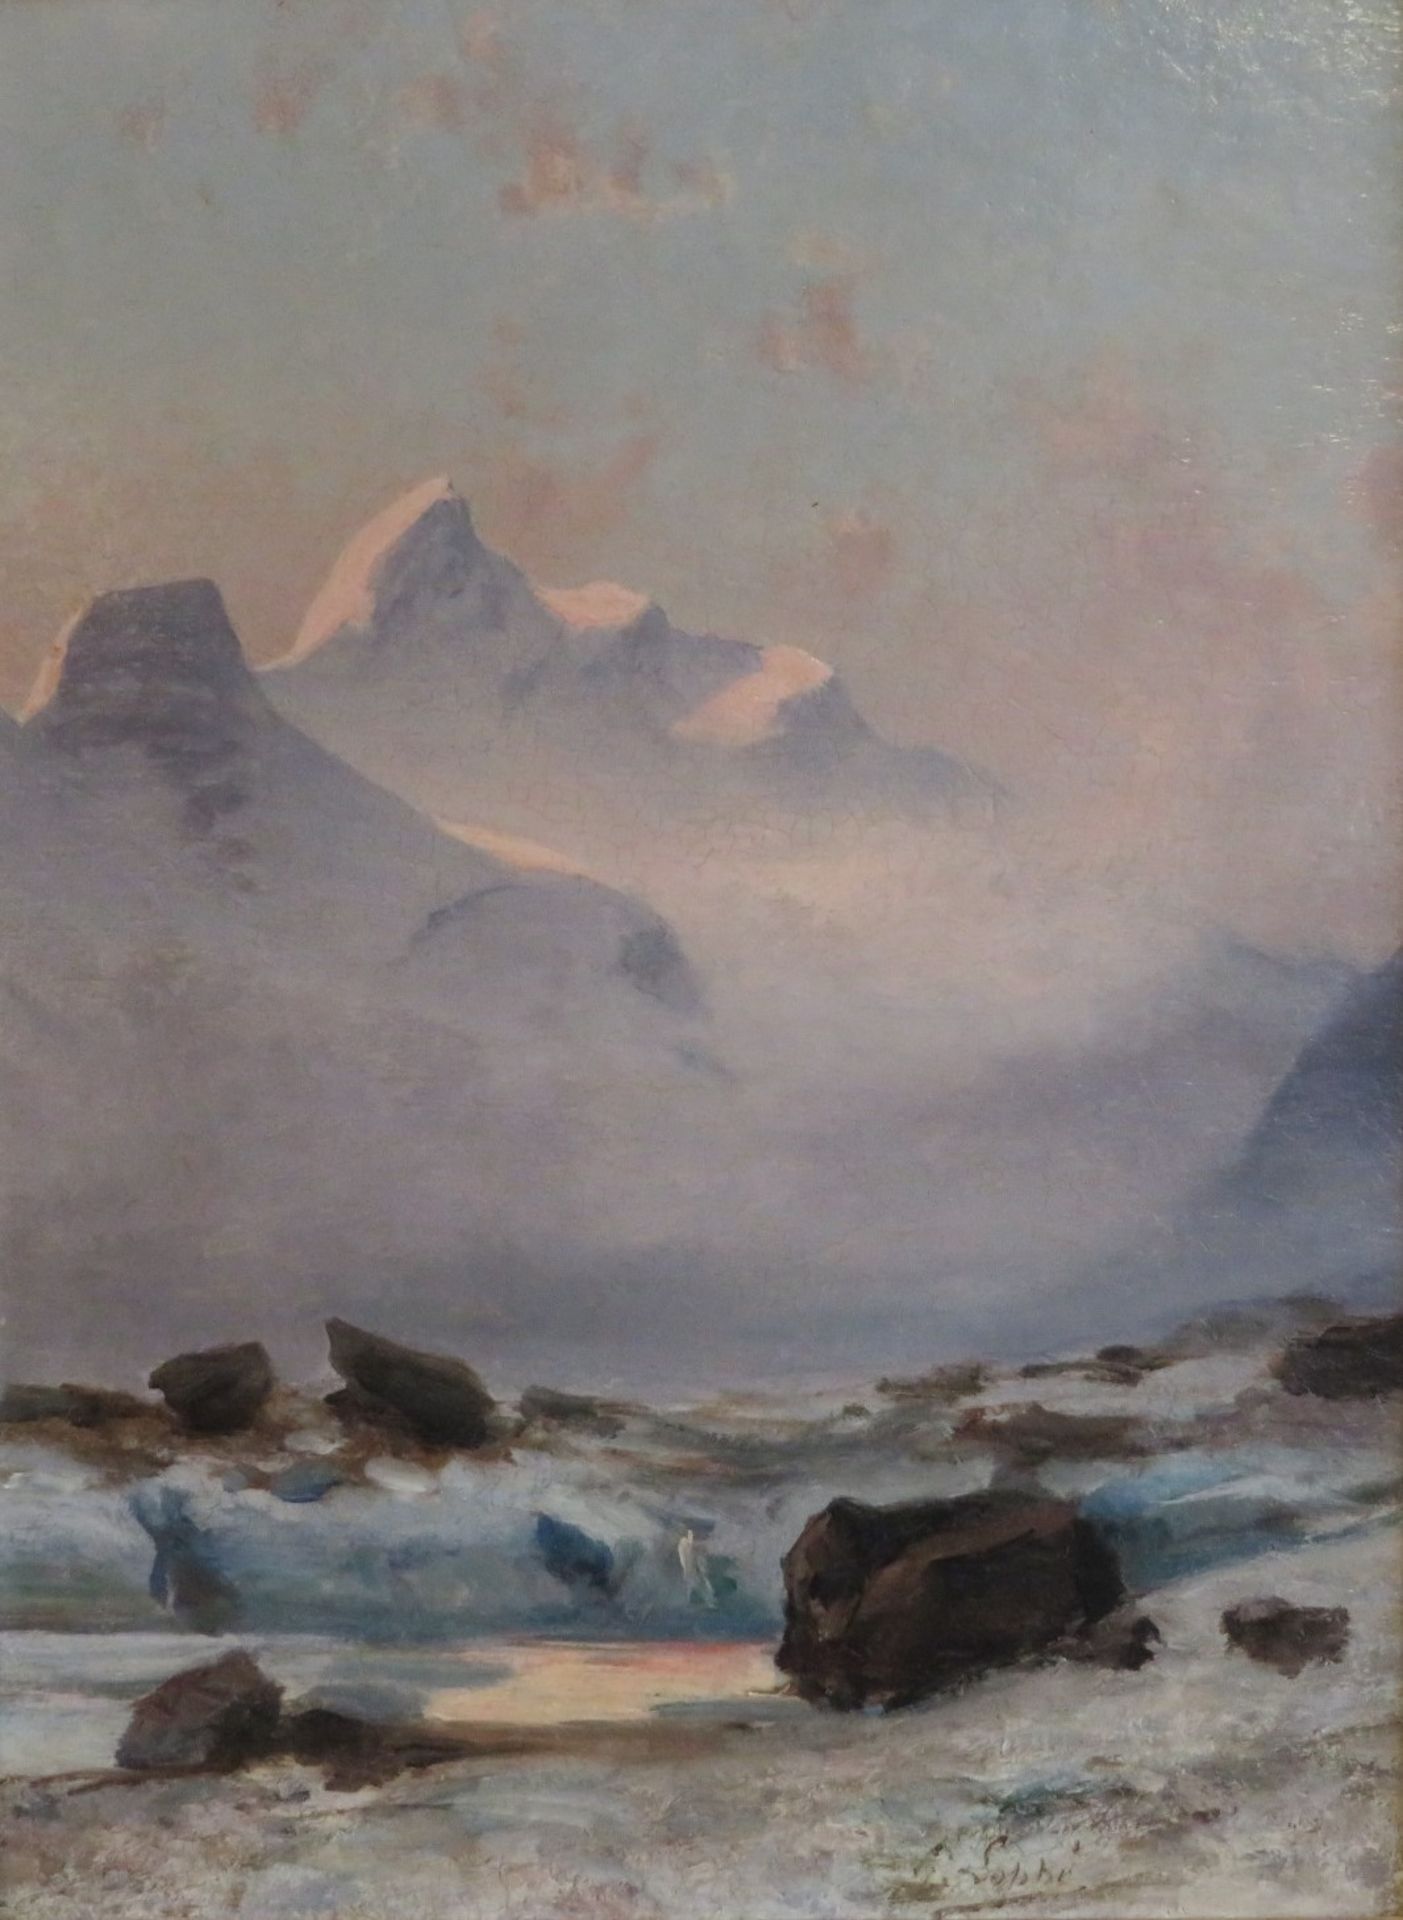 Loppé, Gabriel, 1825 - 1913, Französischer Maler, Fotograf und Bergsteiger,